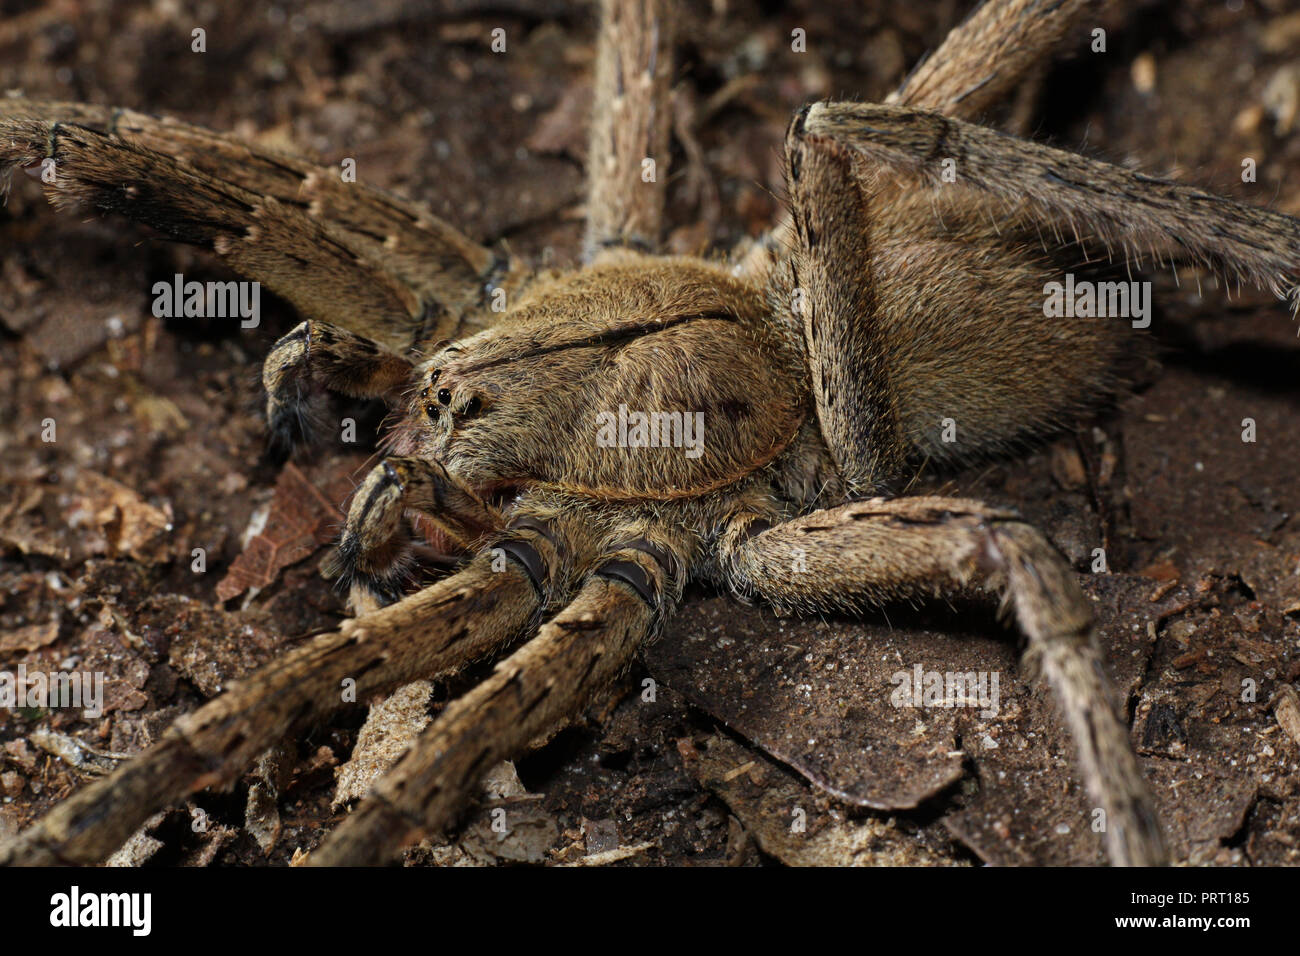 Phoneutria masculins (errance brésilien armadeira / araignée araignée venimeuse), sur le sol des forêts, depuis le sud-est du Brésil. Banque D'Images